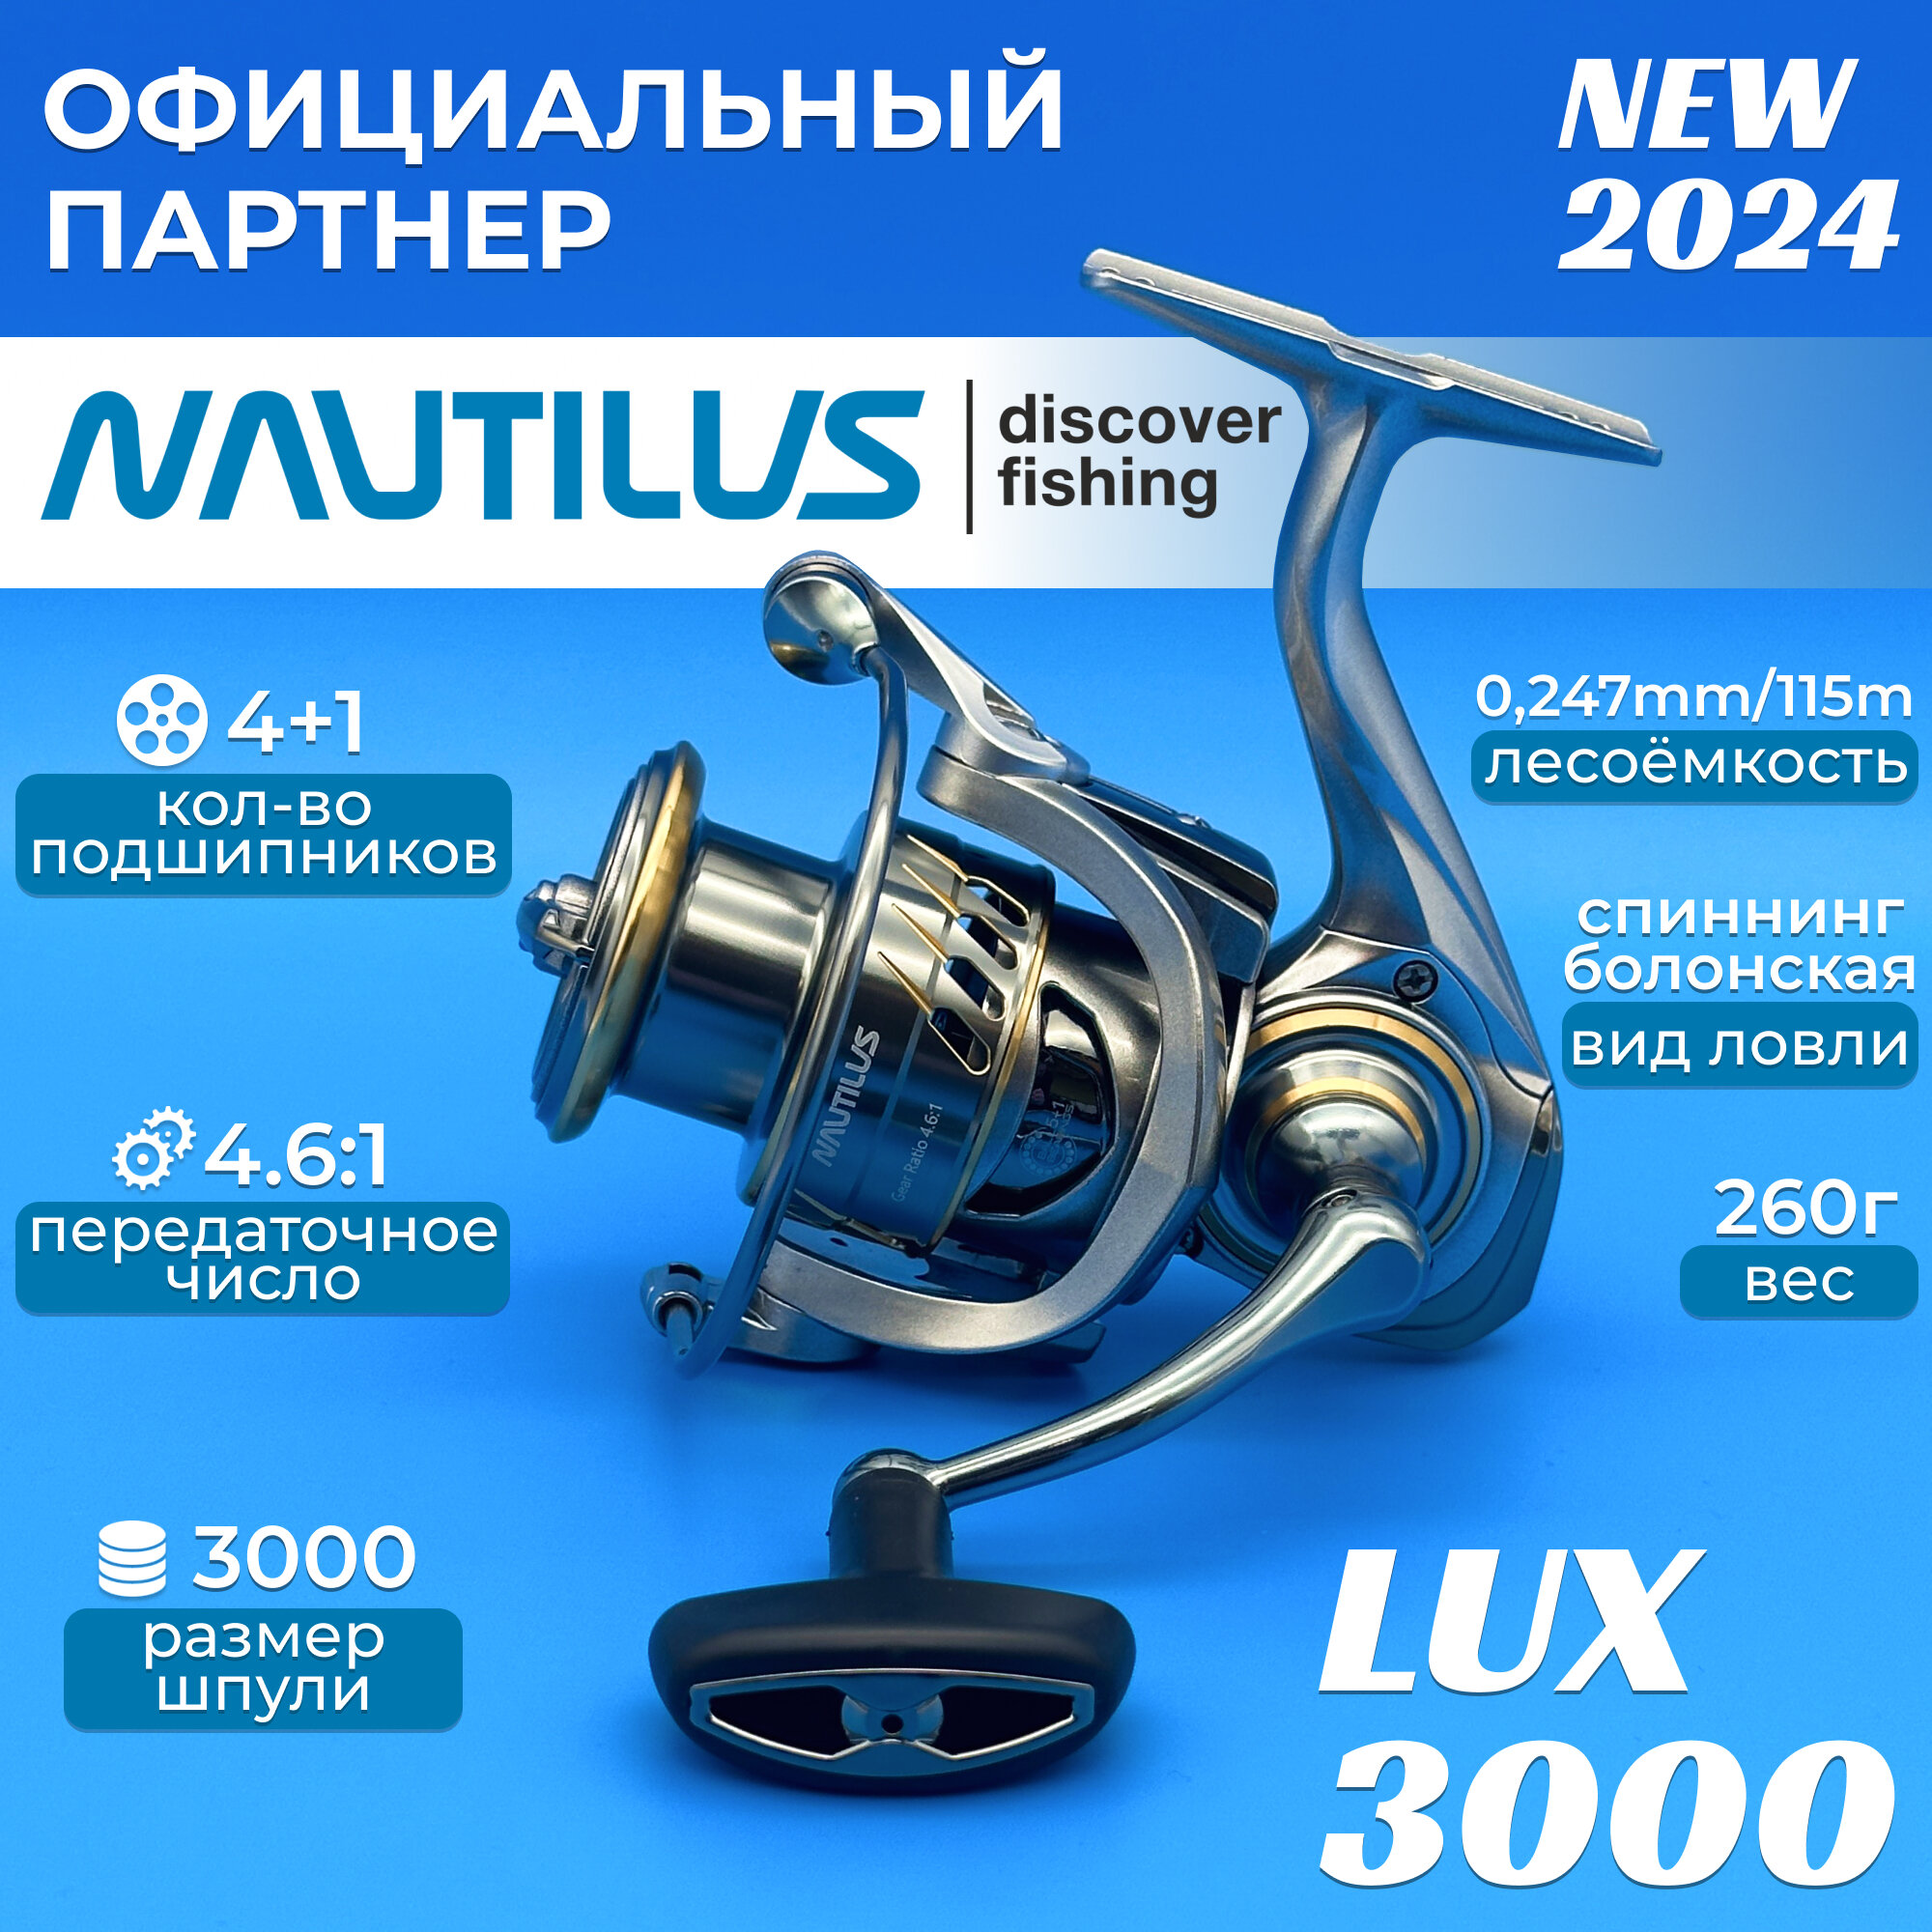 Катушка Nautilus Lux 3000